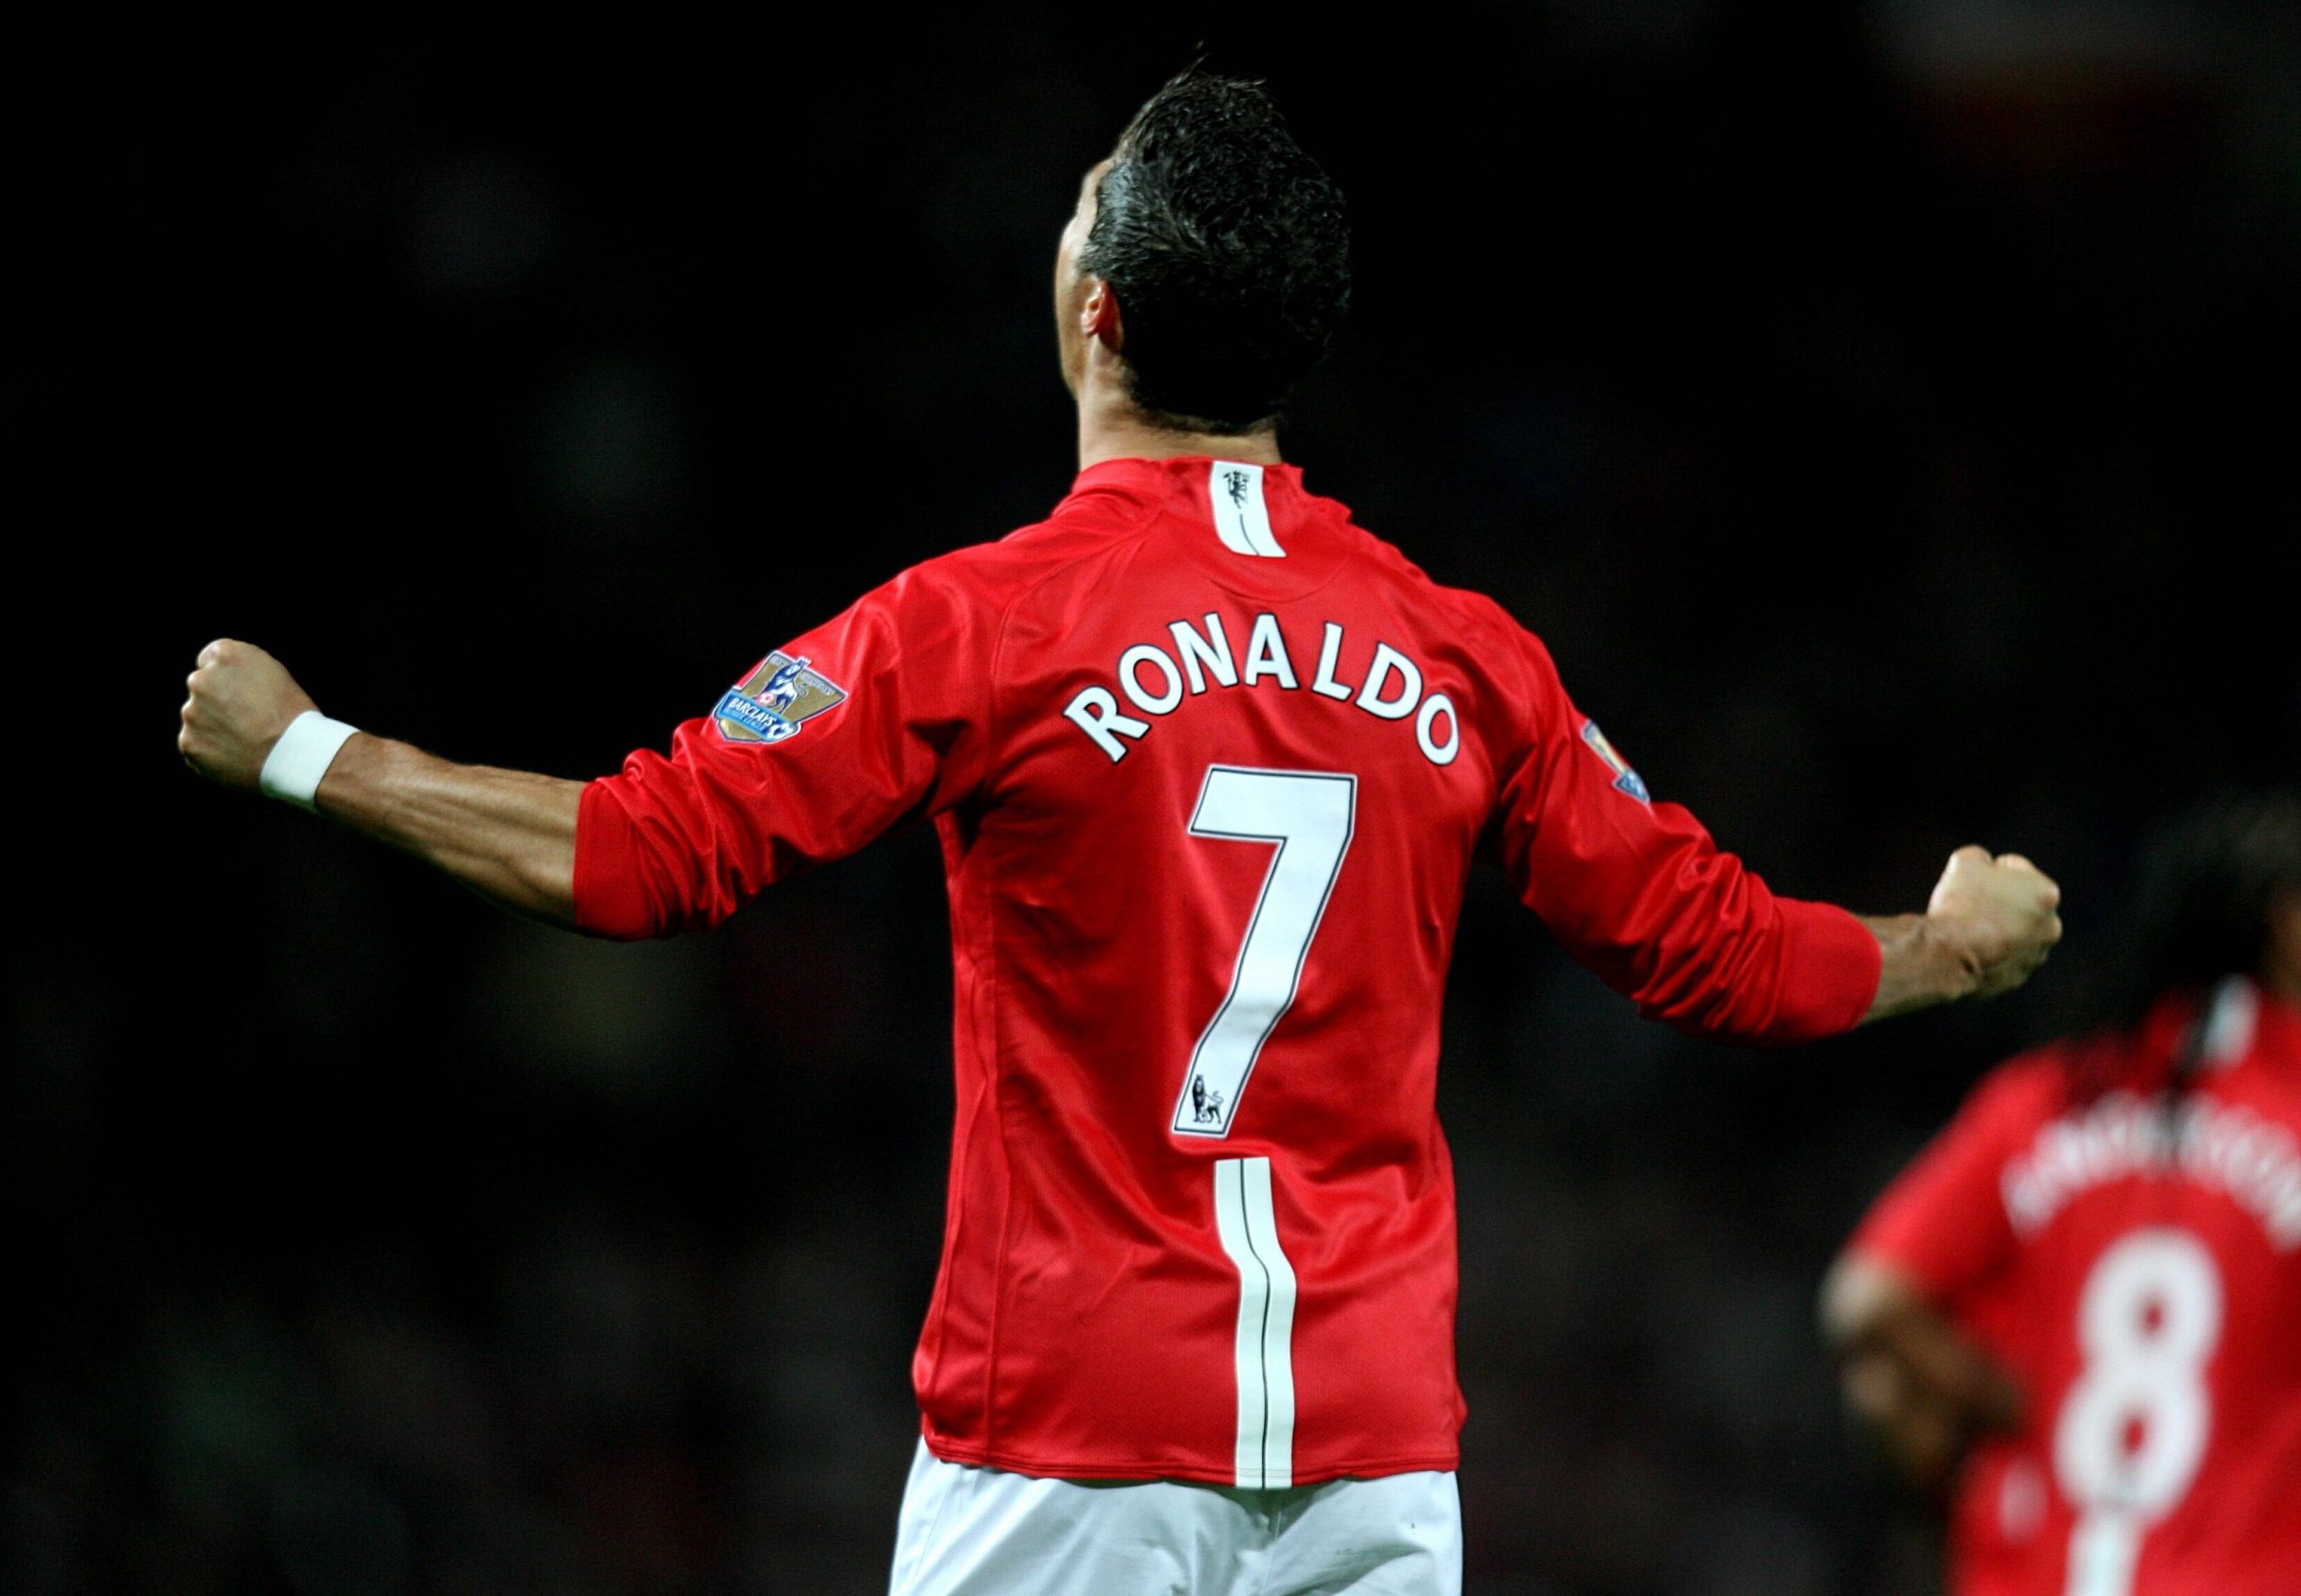 Jetzt ist es offiziell: Cristiano Ronaldo erhält auch bei Manchester United seine Rückennummer „7“